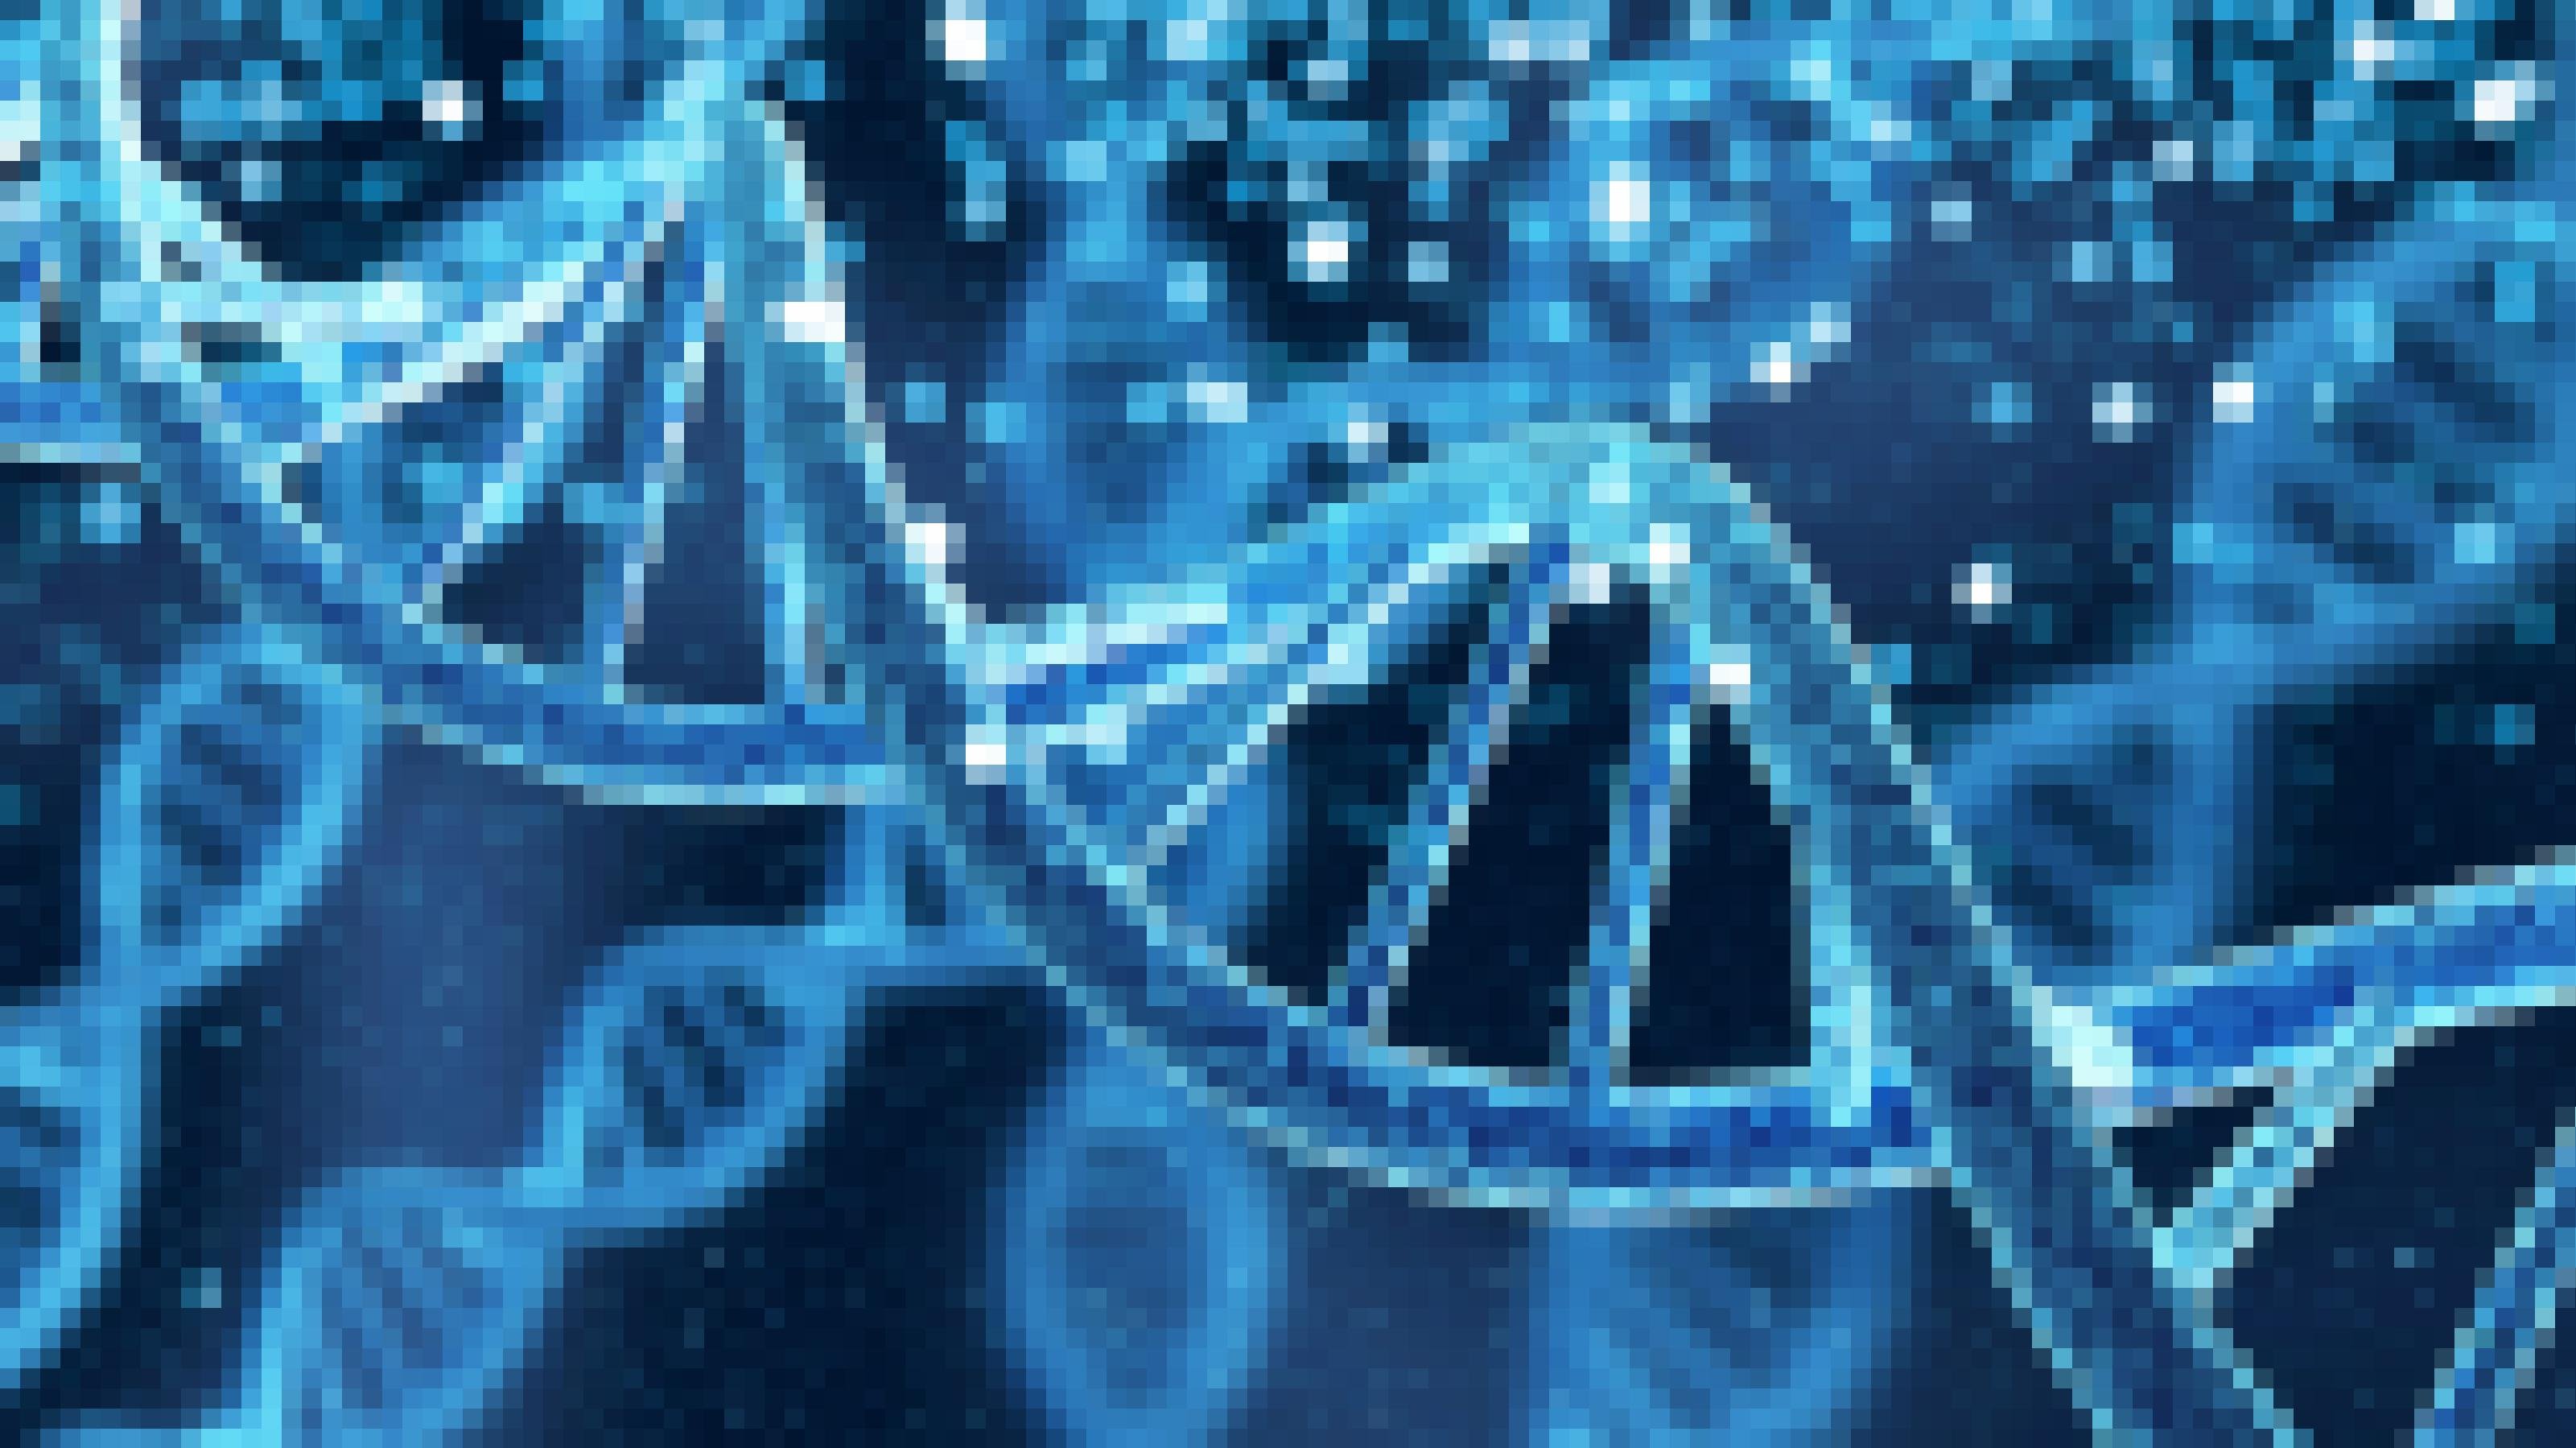 Das Foto zeigt die in Blautönen gehaltene Illustration eine DNA-Spirale – dem Träger der Erbinformation. Heutzutage können Forschende deren komplette Buchstabenfolge entziffern und herauslesen, wer von wem abstammt und ob es gemeinsame Vorfahren gab.